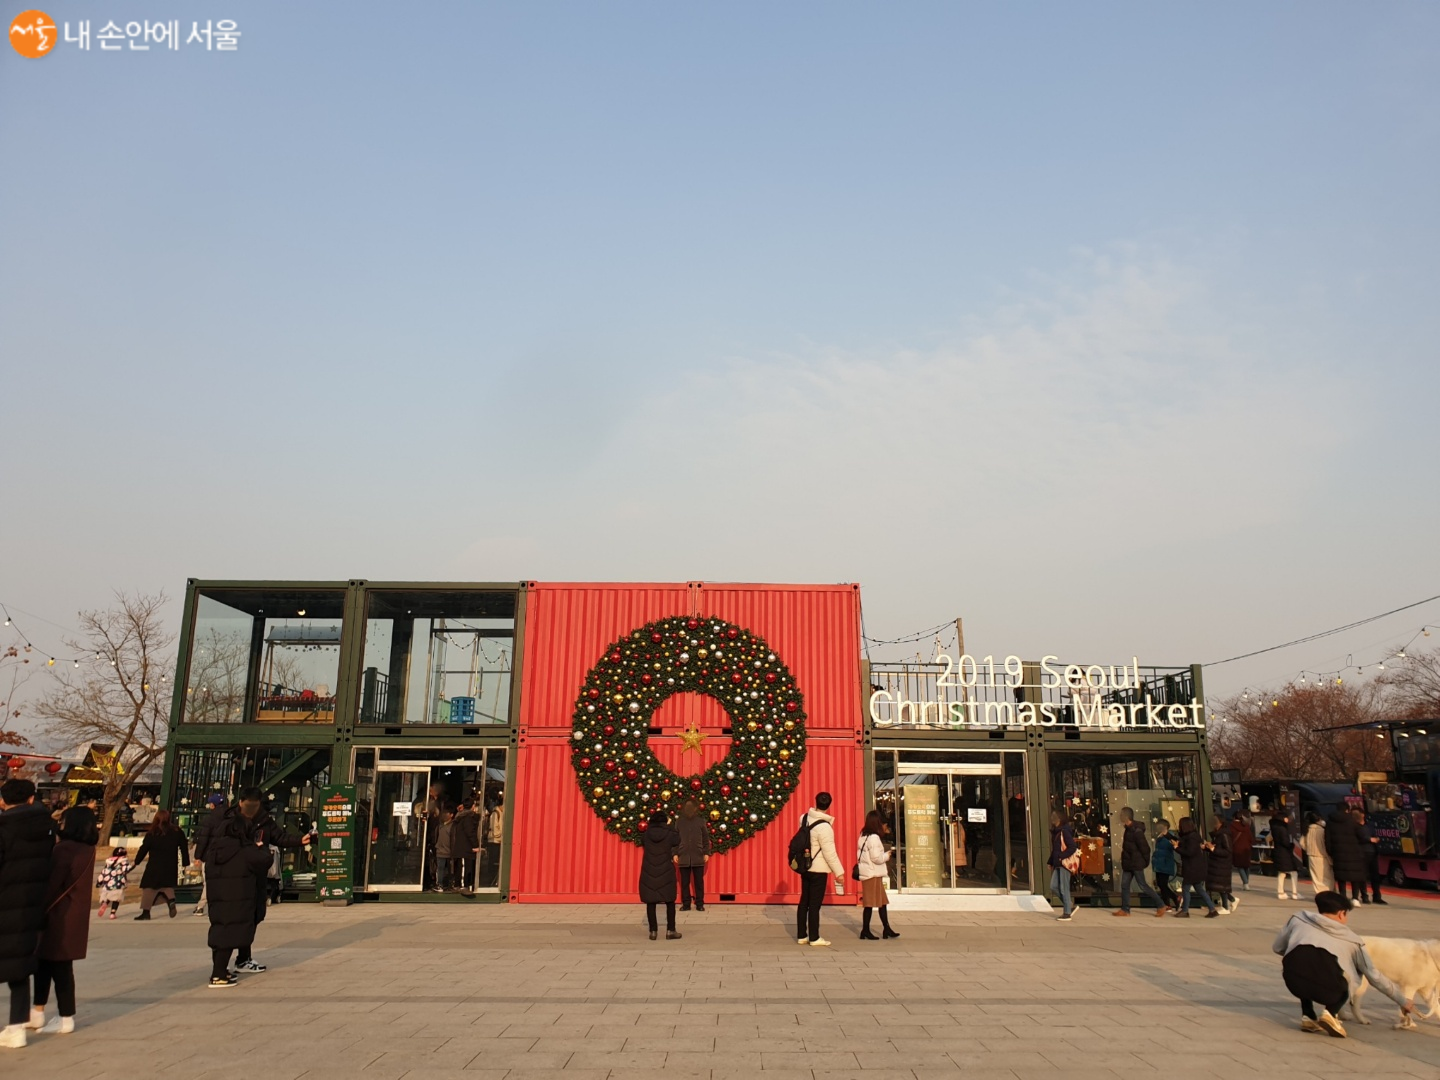 서울크리스마스마켓을 찾은 시민들 모습 ©염윤경